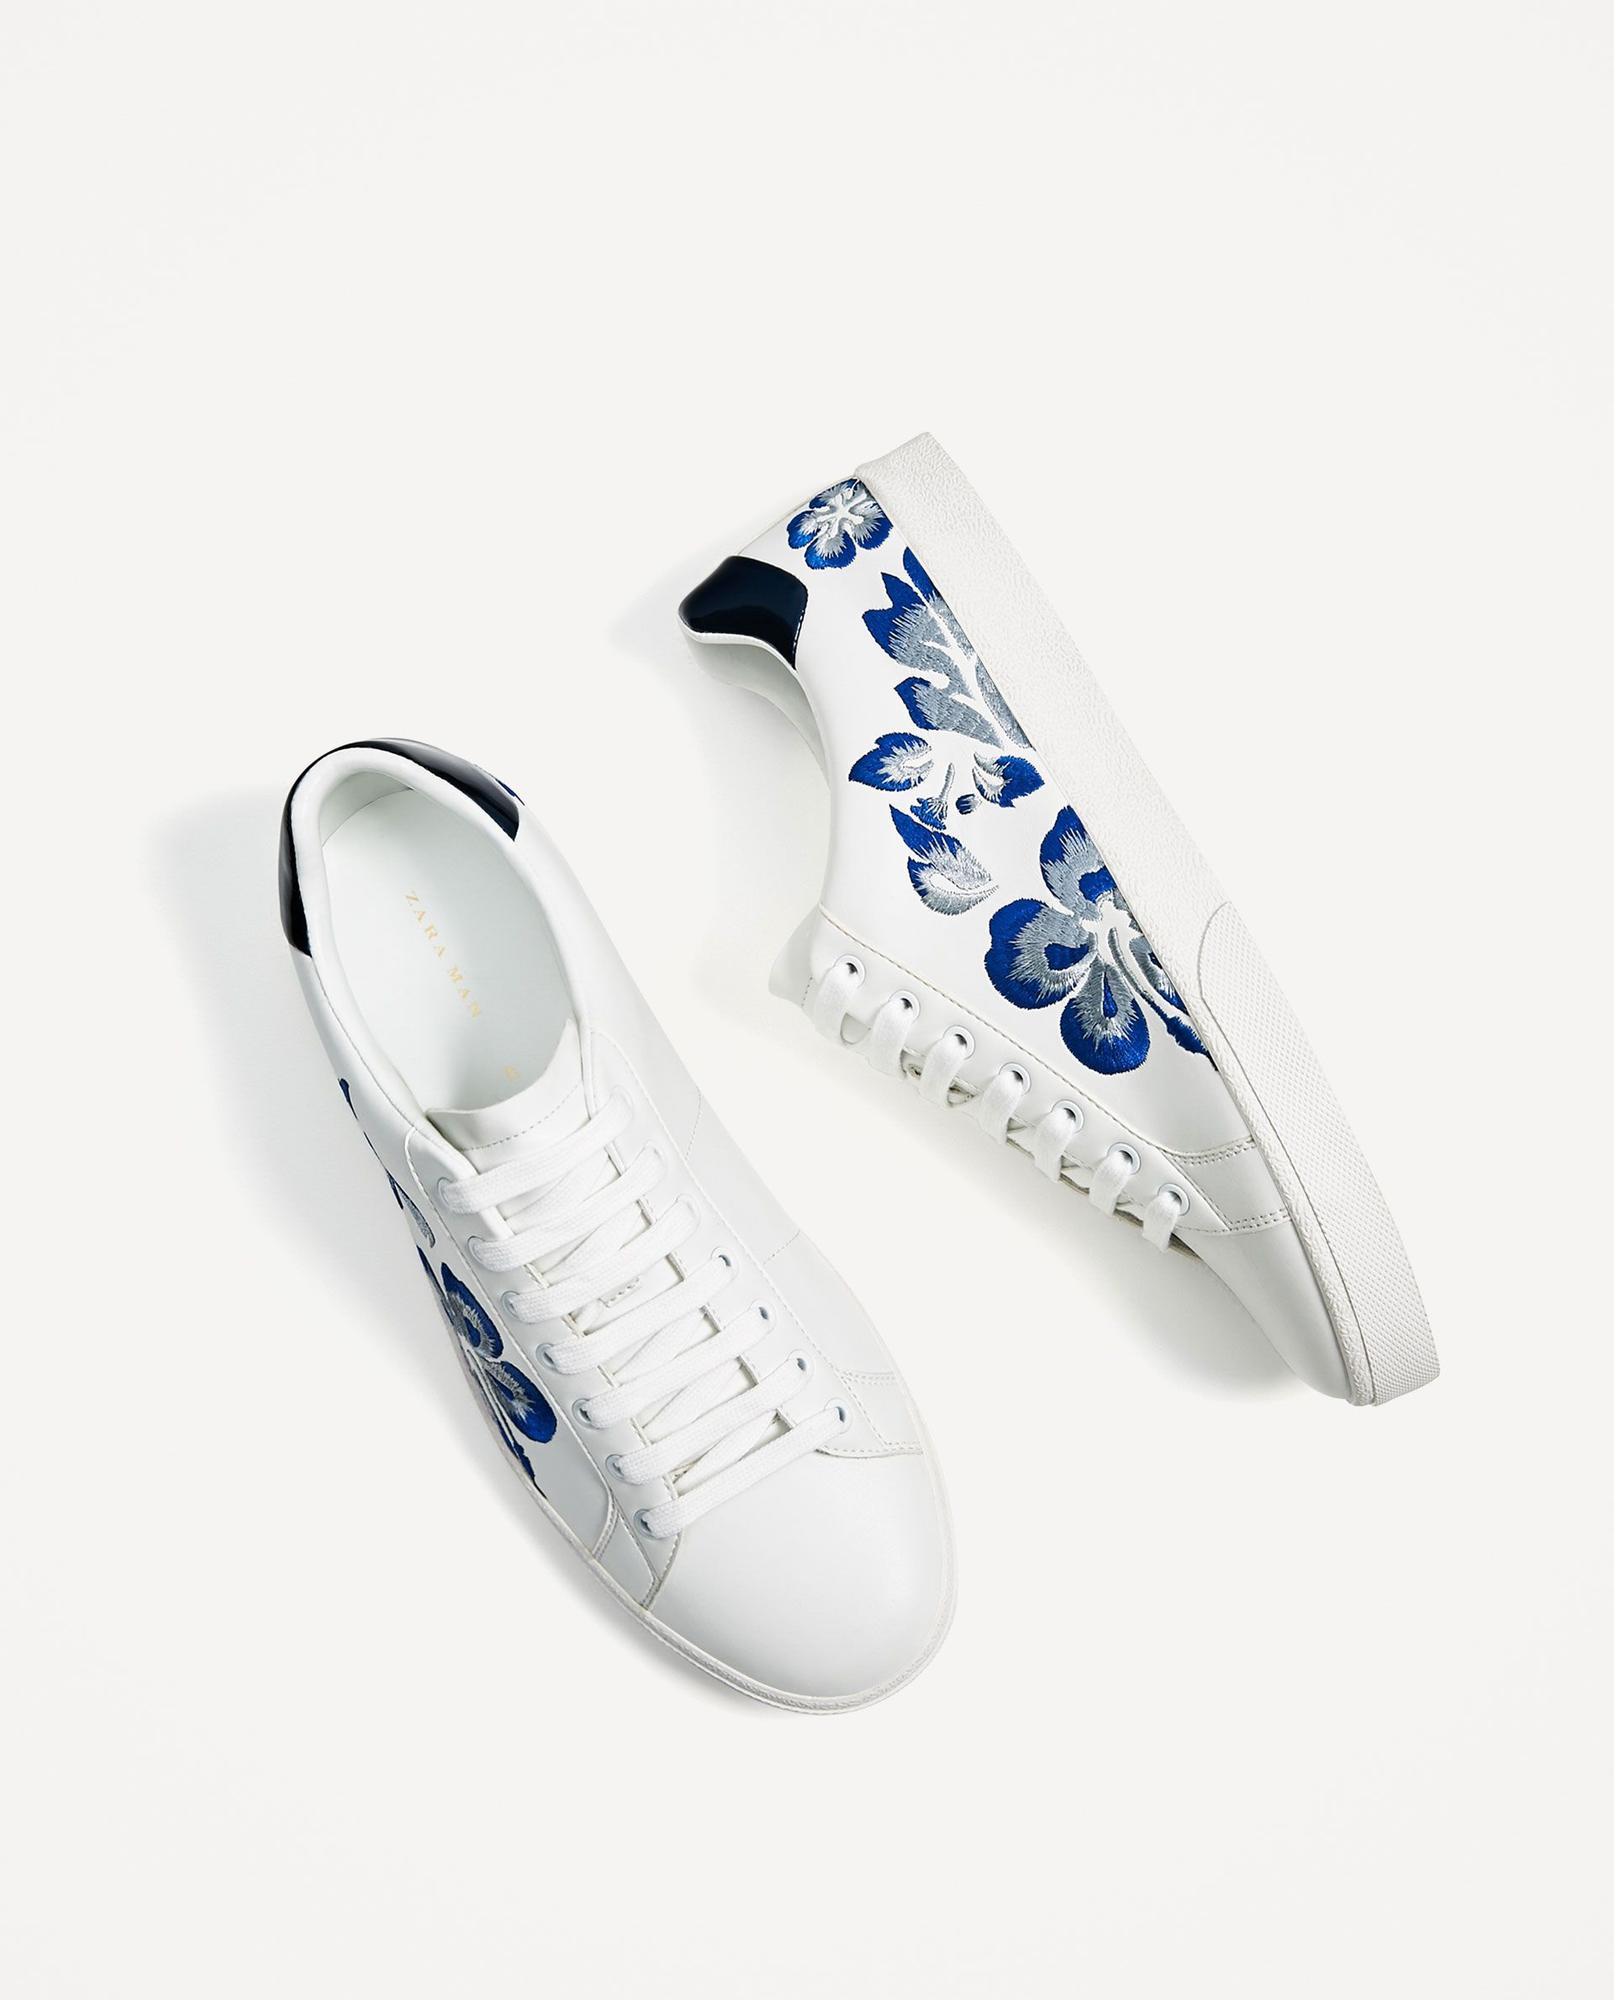 Las zapatillas de flores pisan fuerte: Sneakers bordadas, de Zara (35,95 euros).